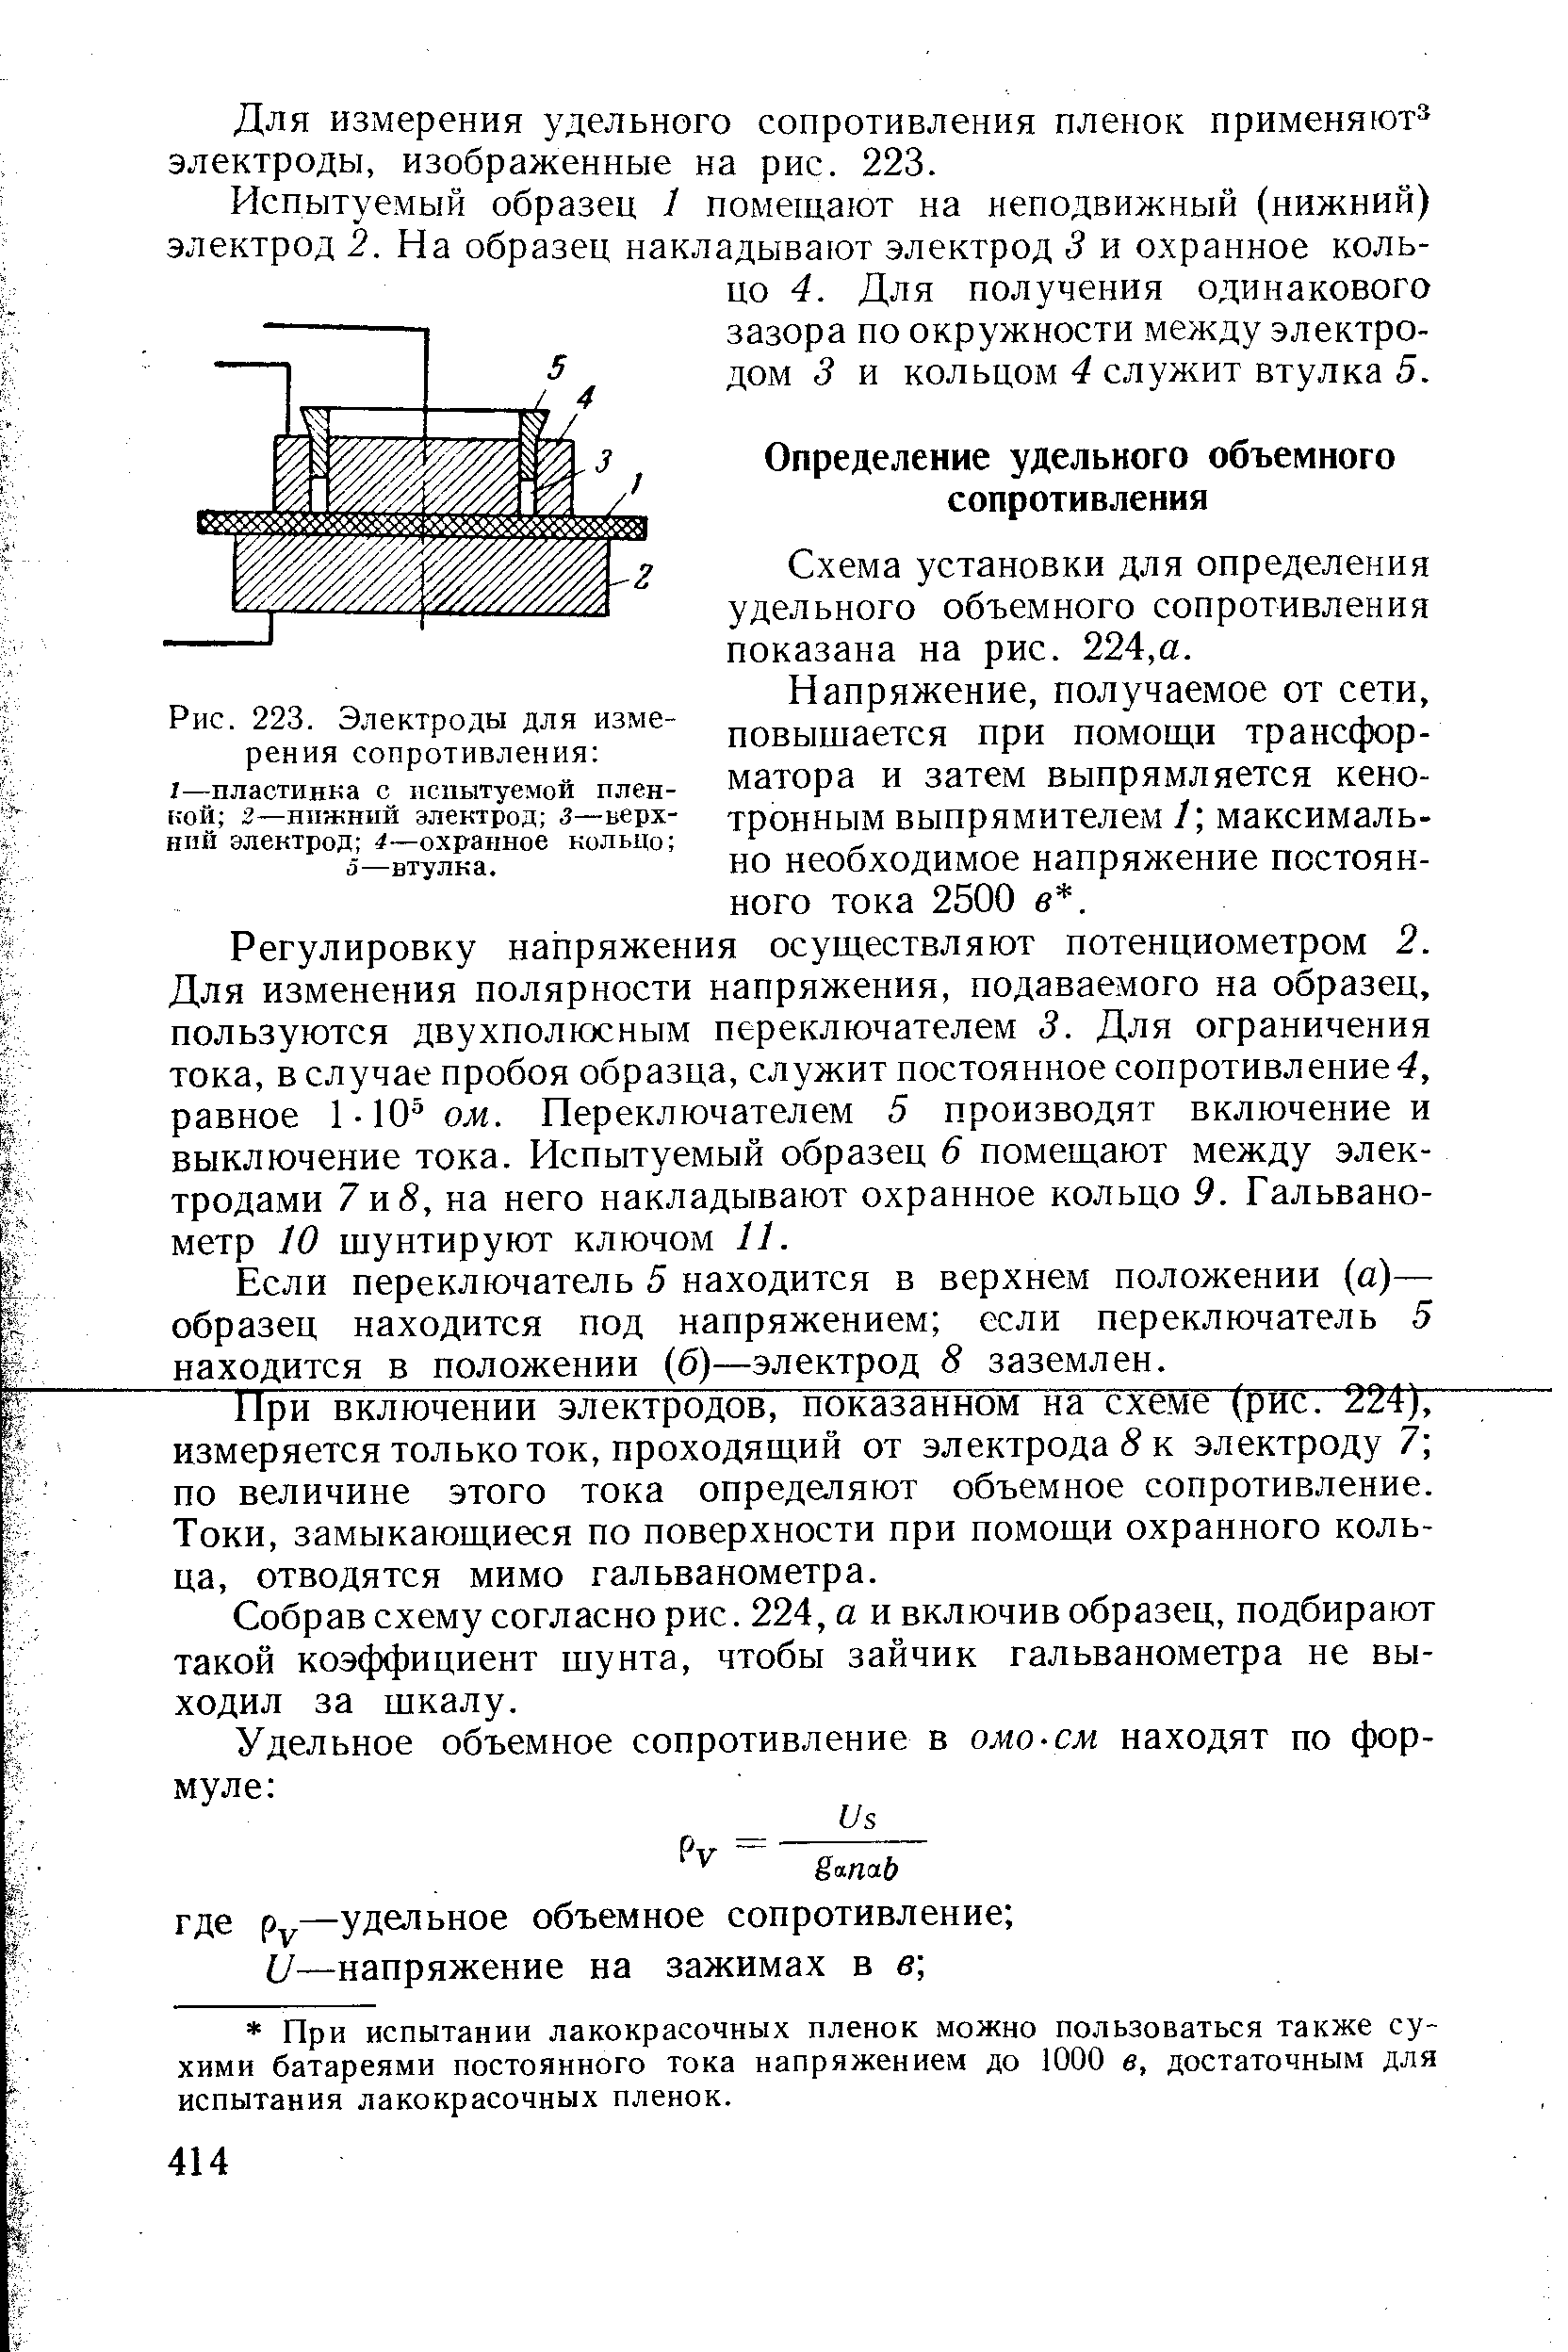 Схема установки для определения удельного объемного сопротивления показана на рис. 224,а.
